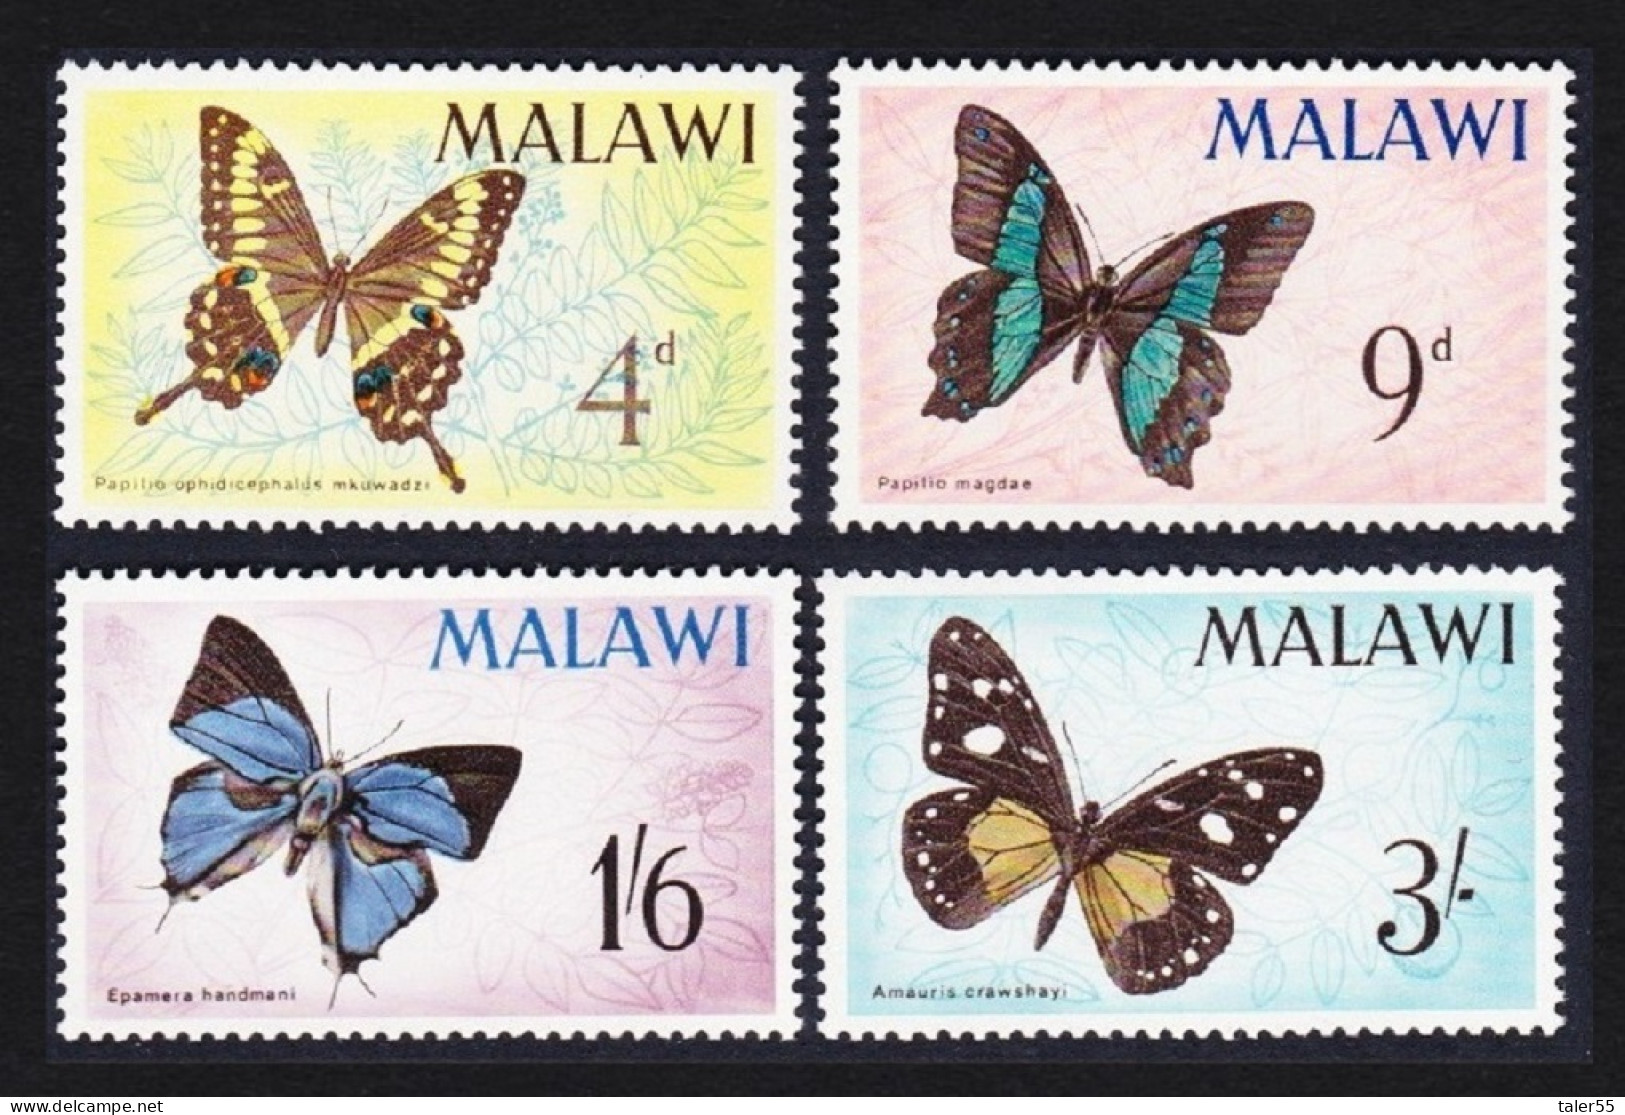 Malawi Butterflies 4v 1966 MNH SG#247-250 MI#37-40 - Malawi (1964-...)